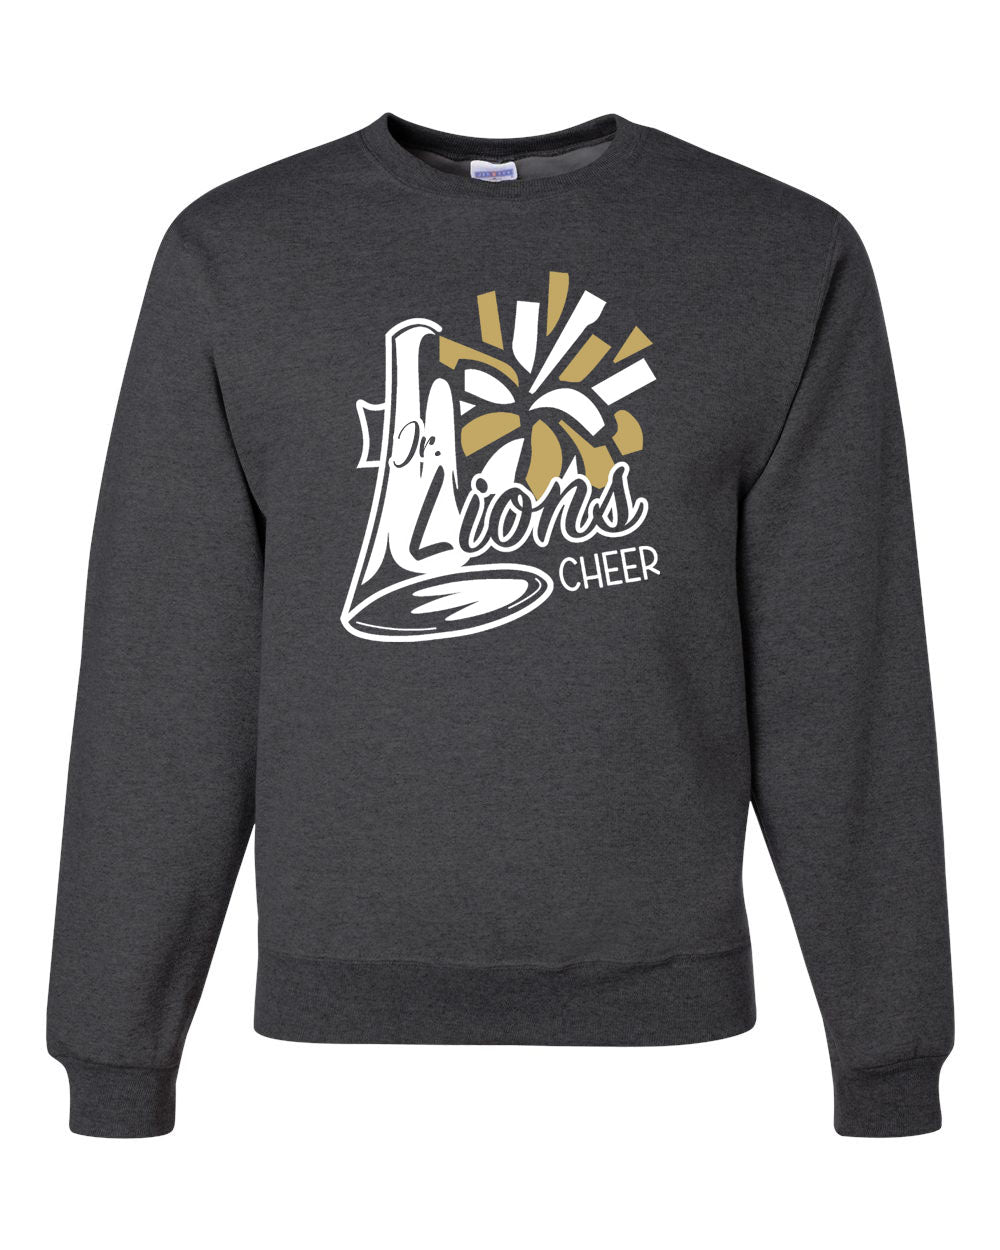 Lions Cheer Design 2 non hooded sweatshirt